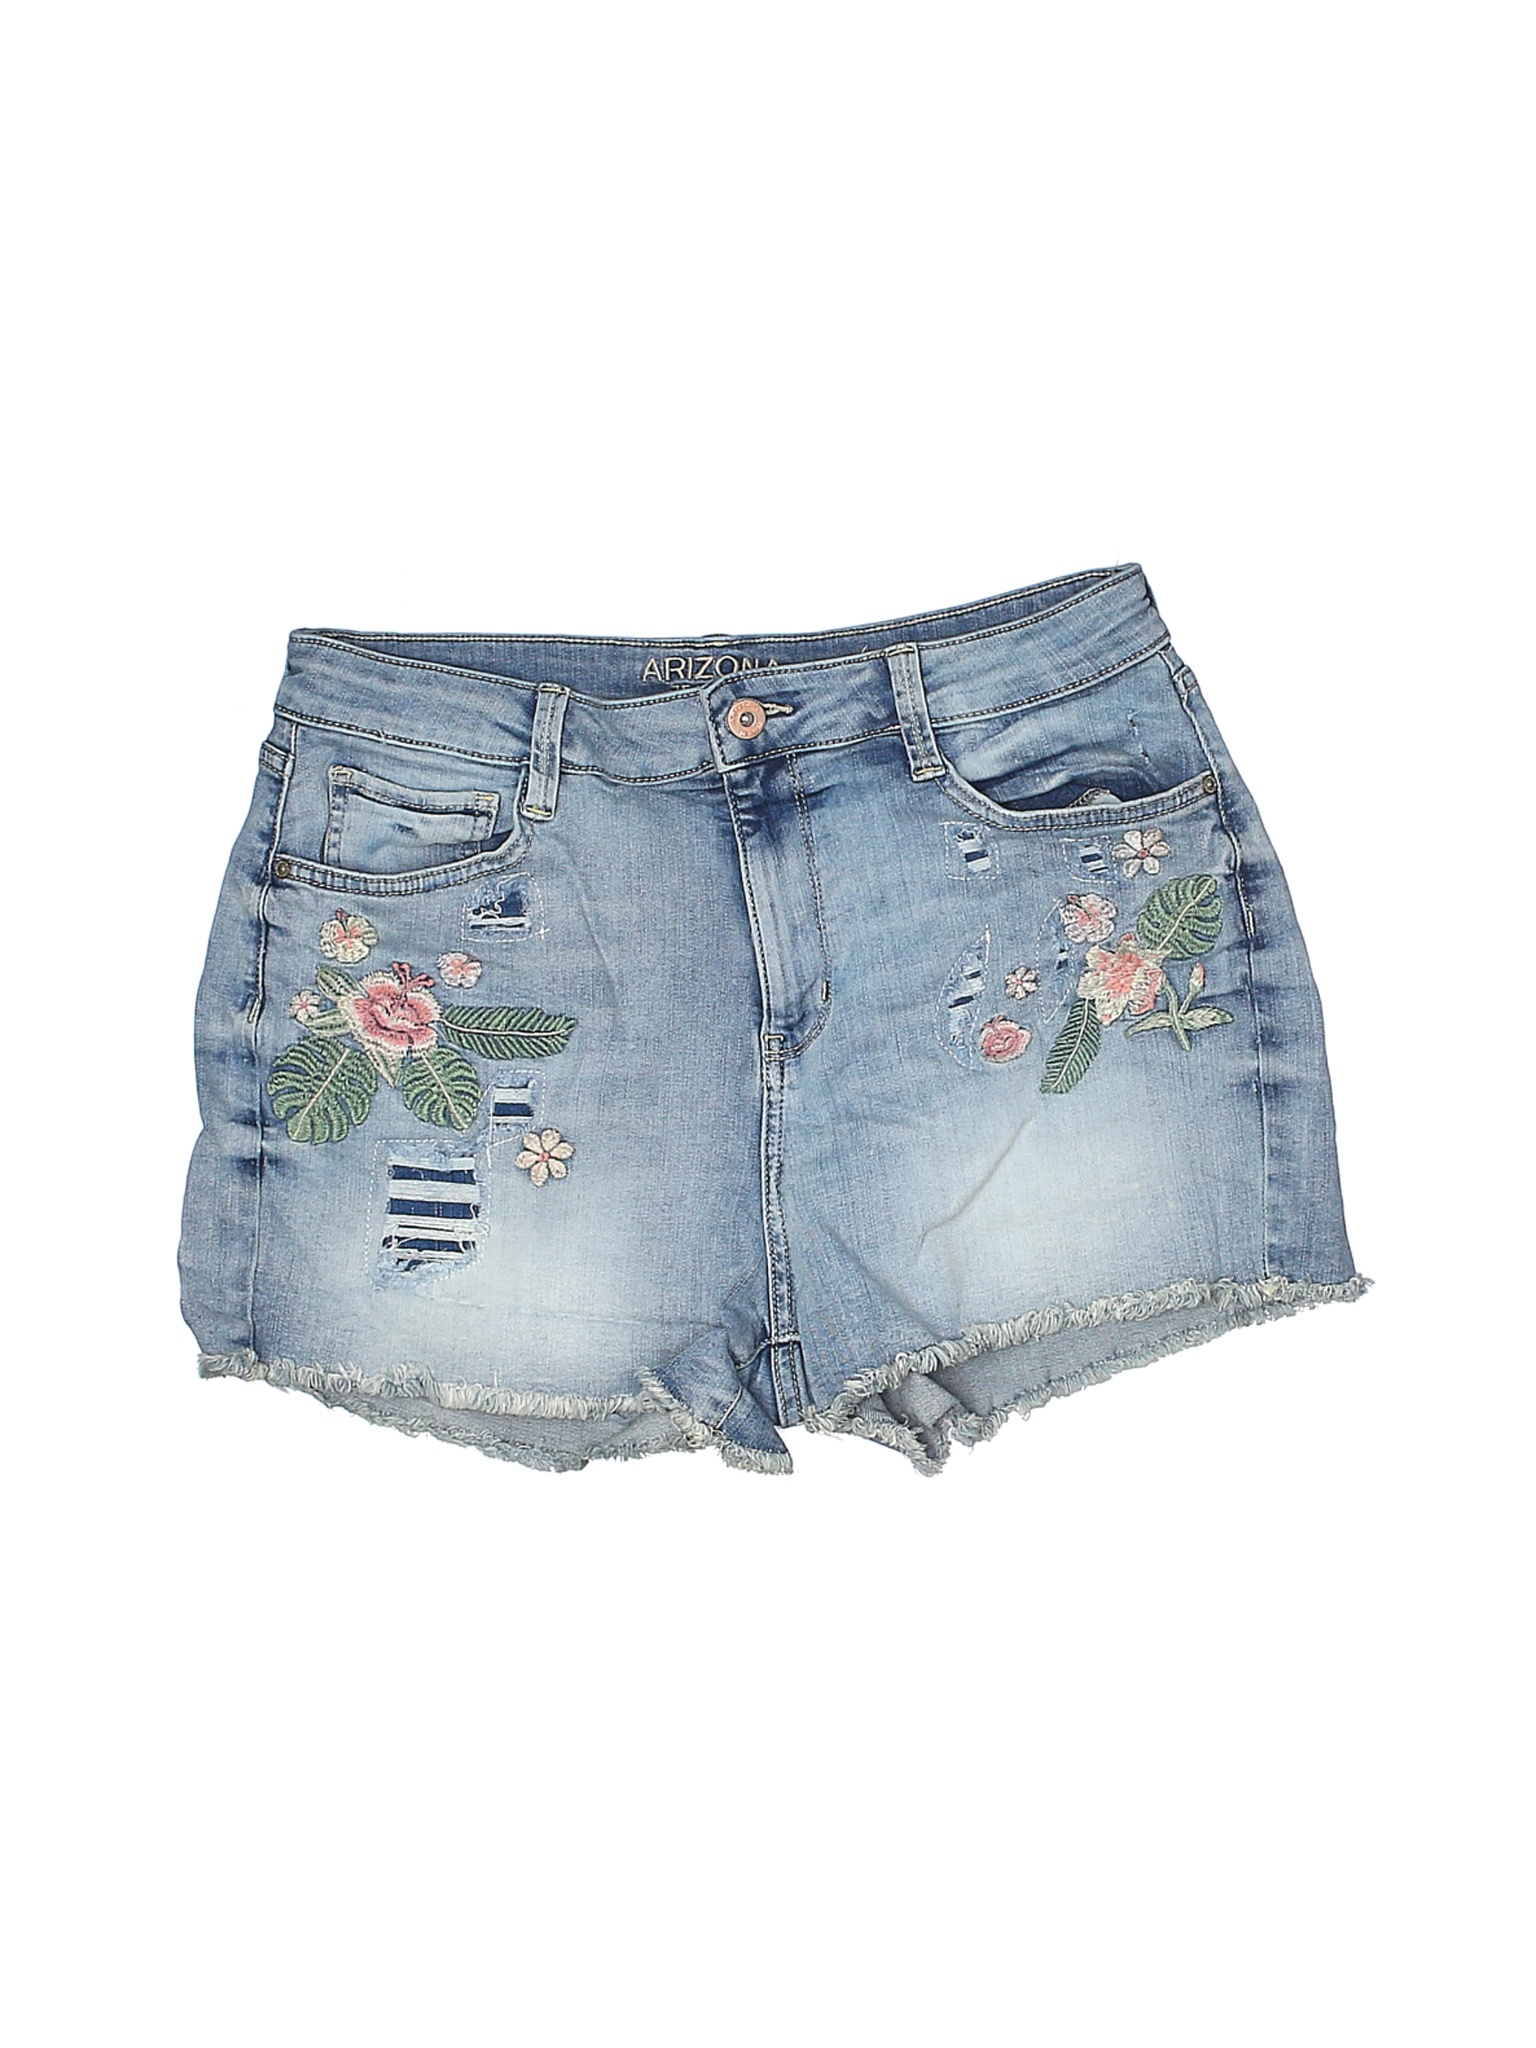 arizona jean shorts